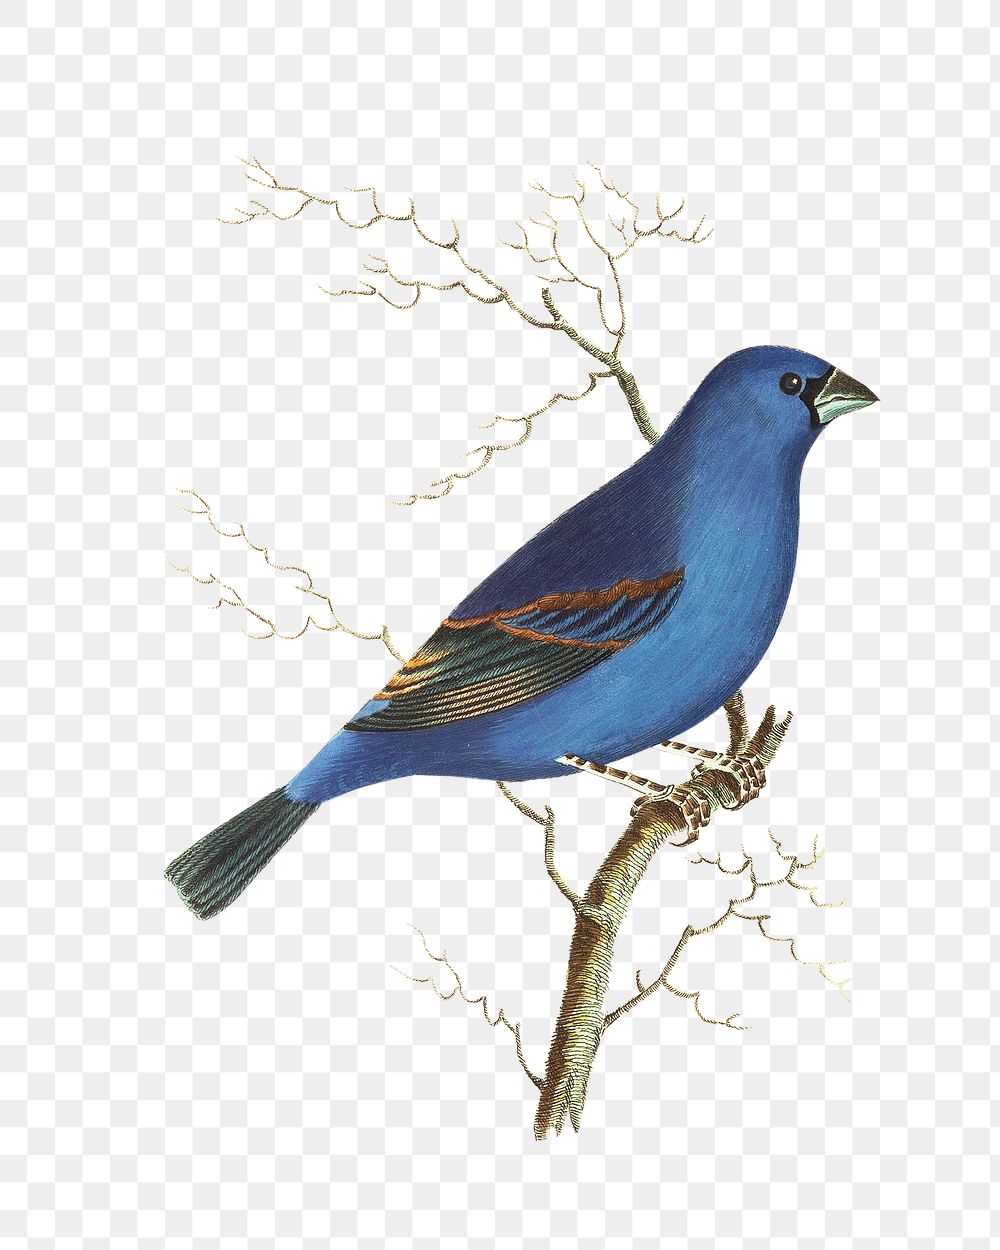 Png hand drawn deep blue grossbeak bird illustration